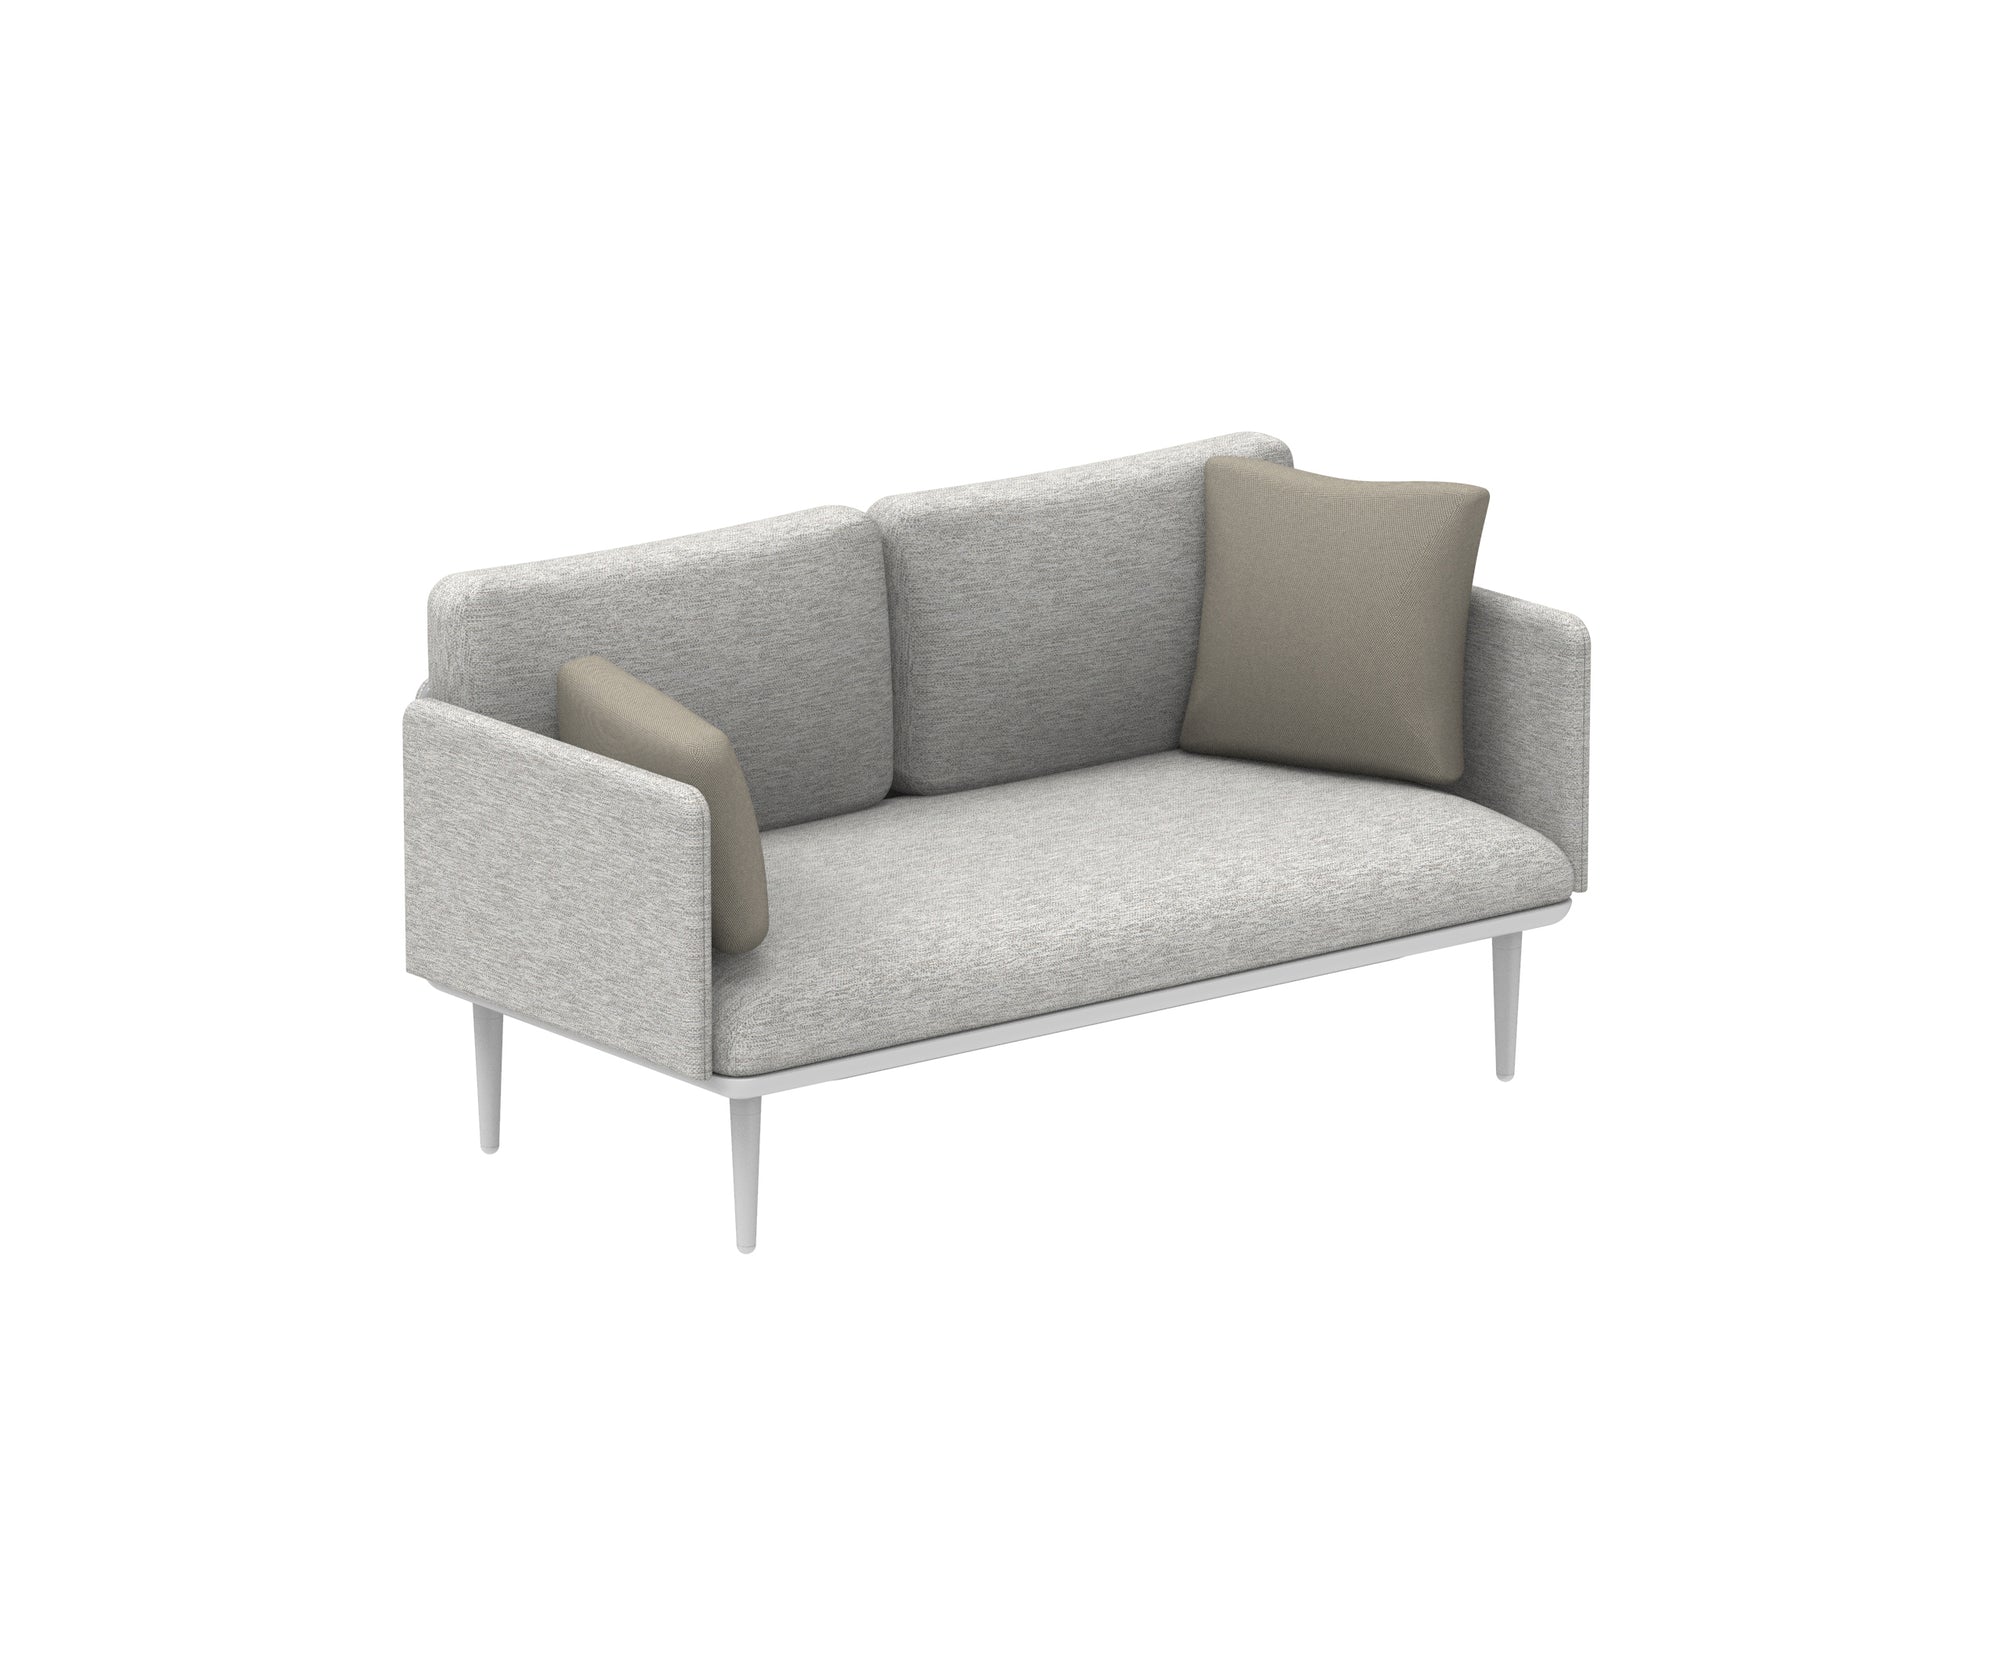 Styletto Lounge Sofa | Royal Botania